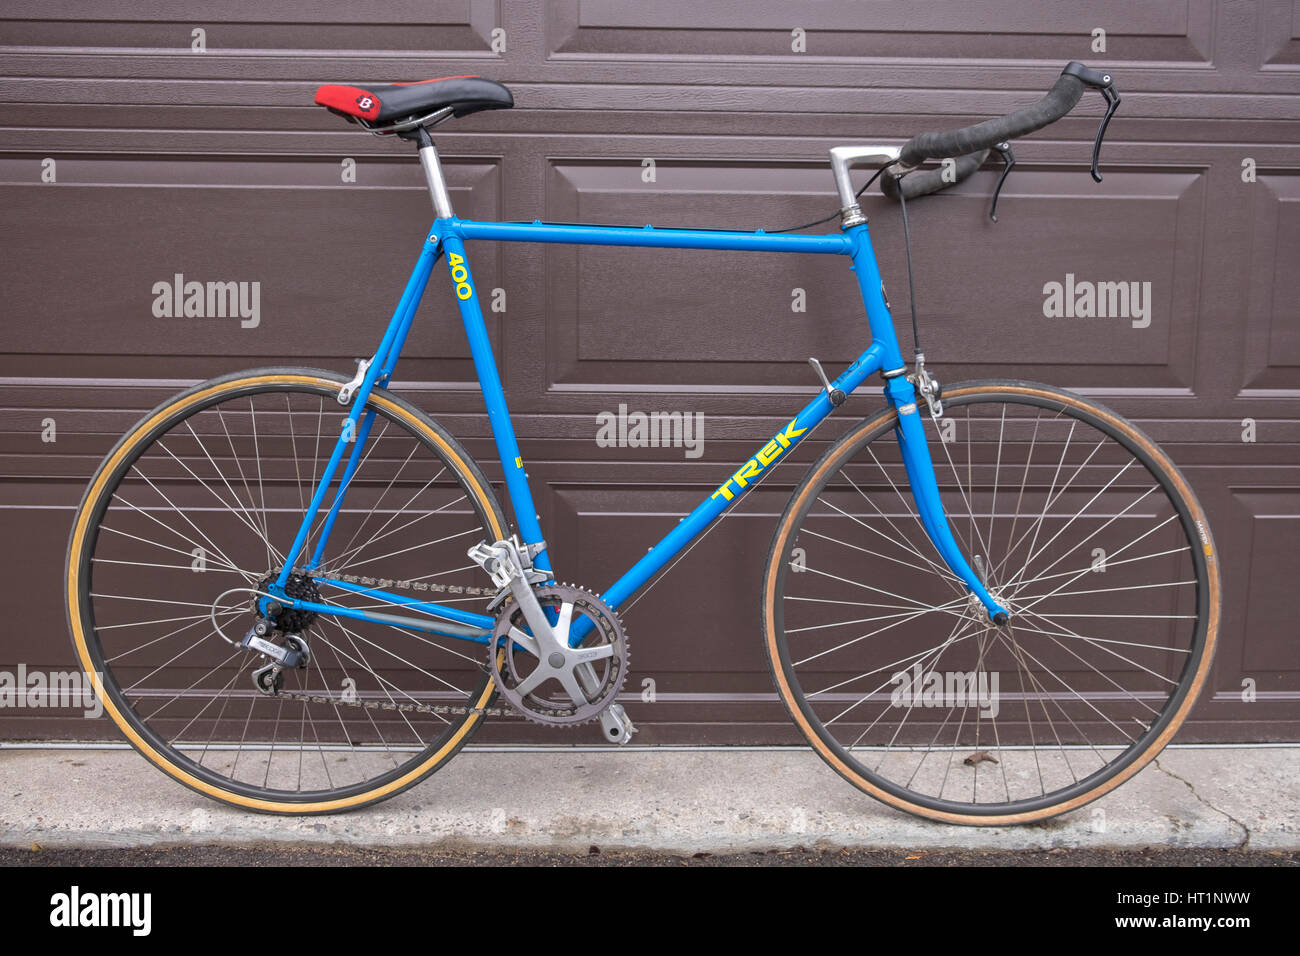 Un vieux vélo Trek bleu 300 équipé de corne bull bars s'appuie contre une porte de garage brun. Banque D'Images